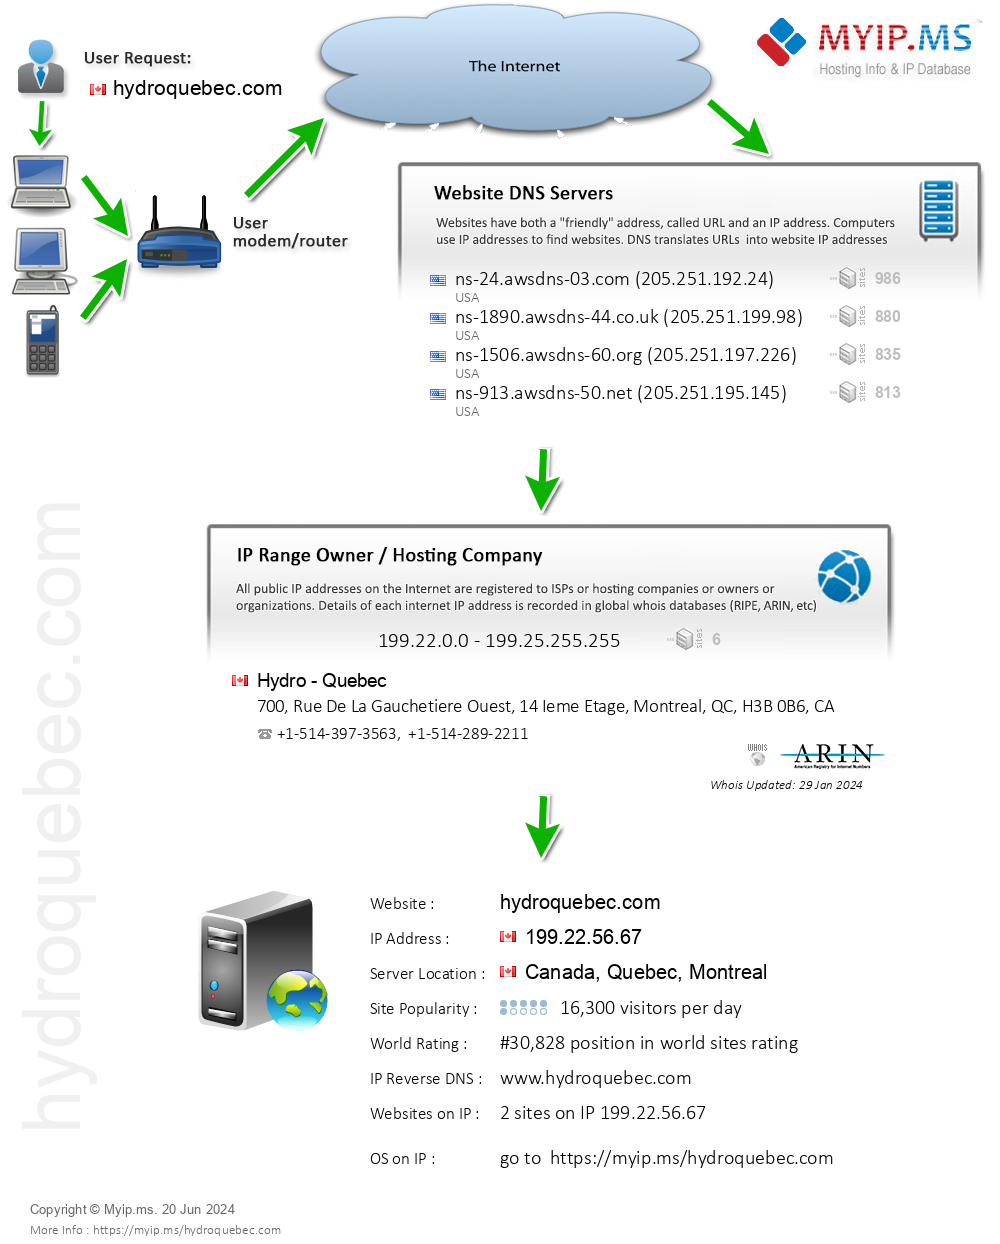 Hydroquebec.com - Website Hosting Visual IP Diagram